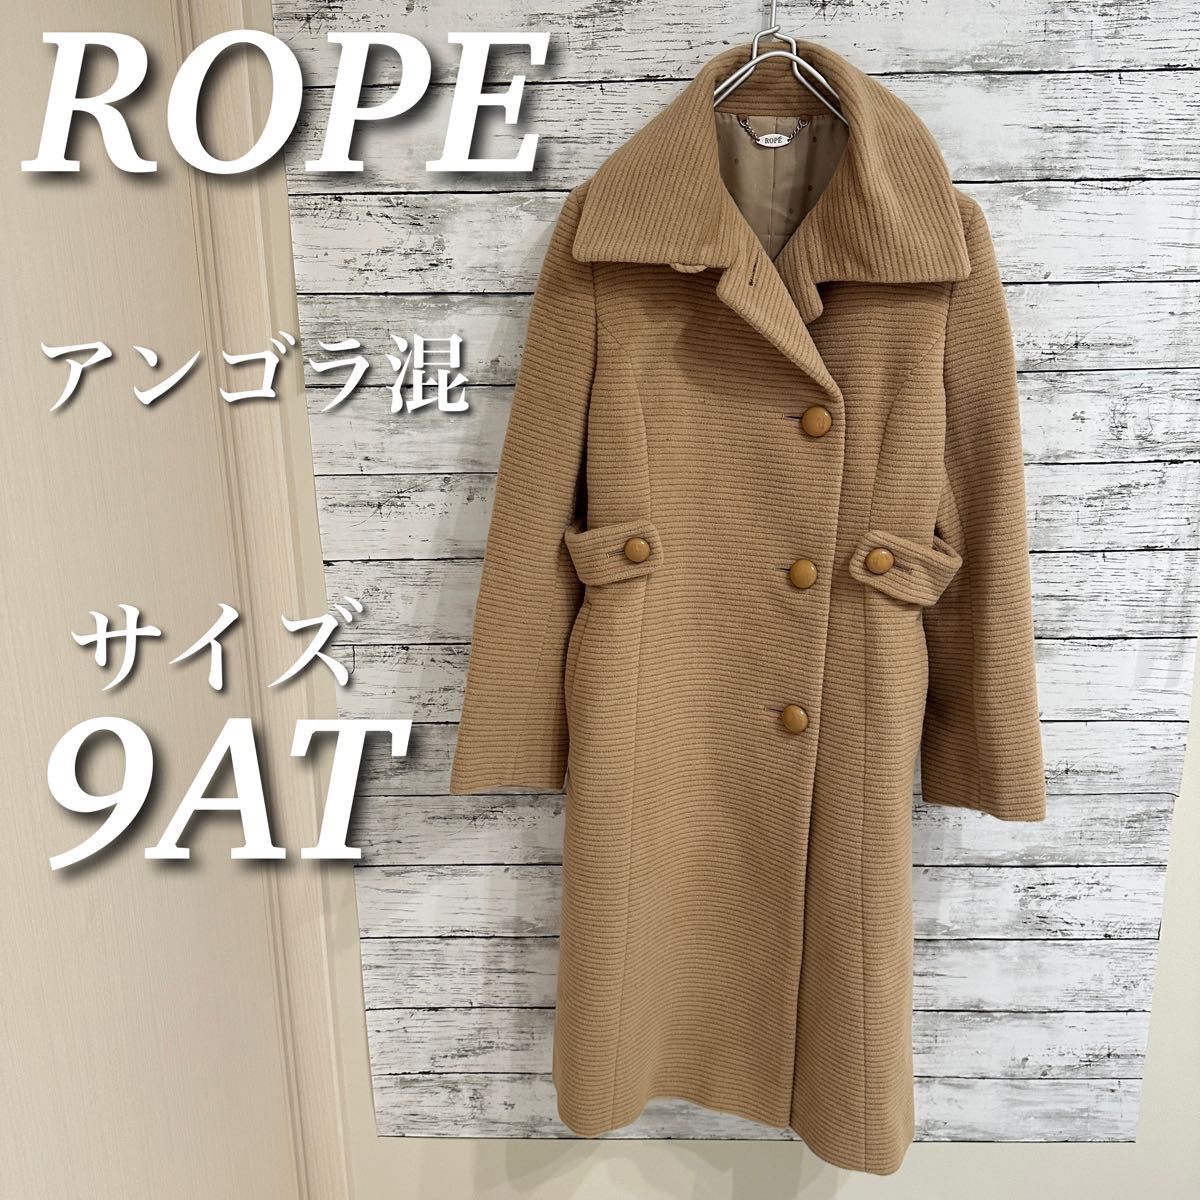 ROPE ロペ ロングコート ウール アンゴラ混 アウター 日本製 ベージュ